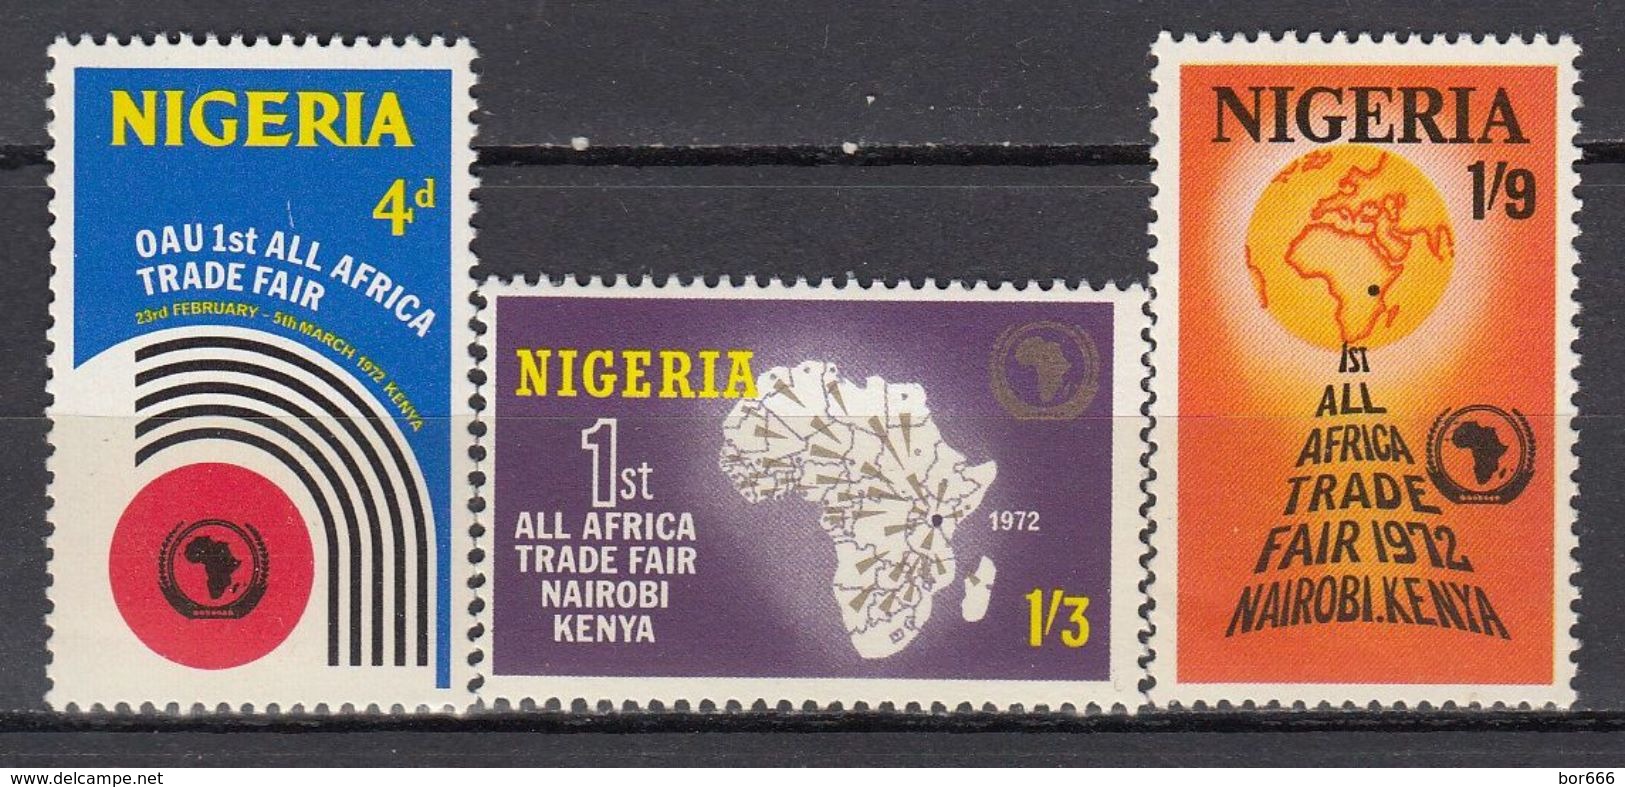 Nigeria - TRADE FAIR 1972 MNH - Nigeria (1961-...)